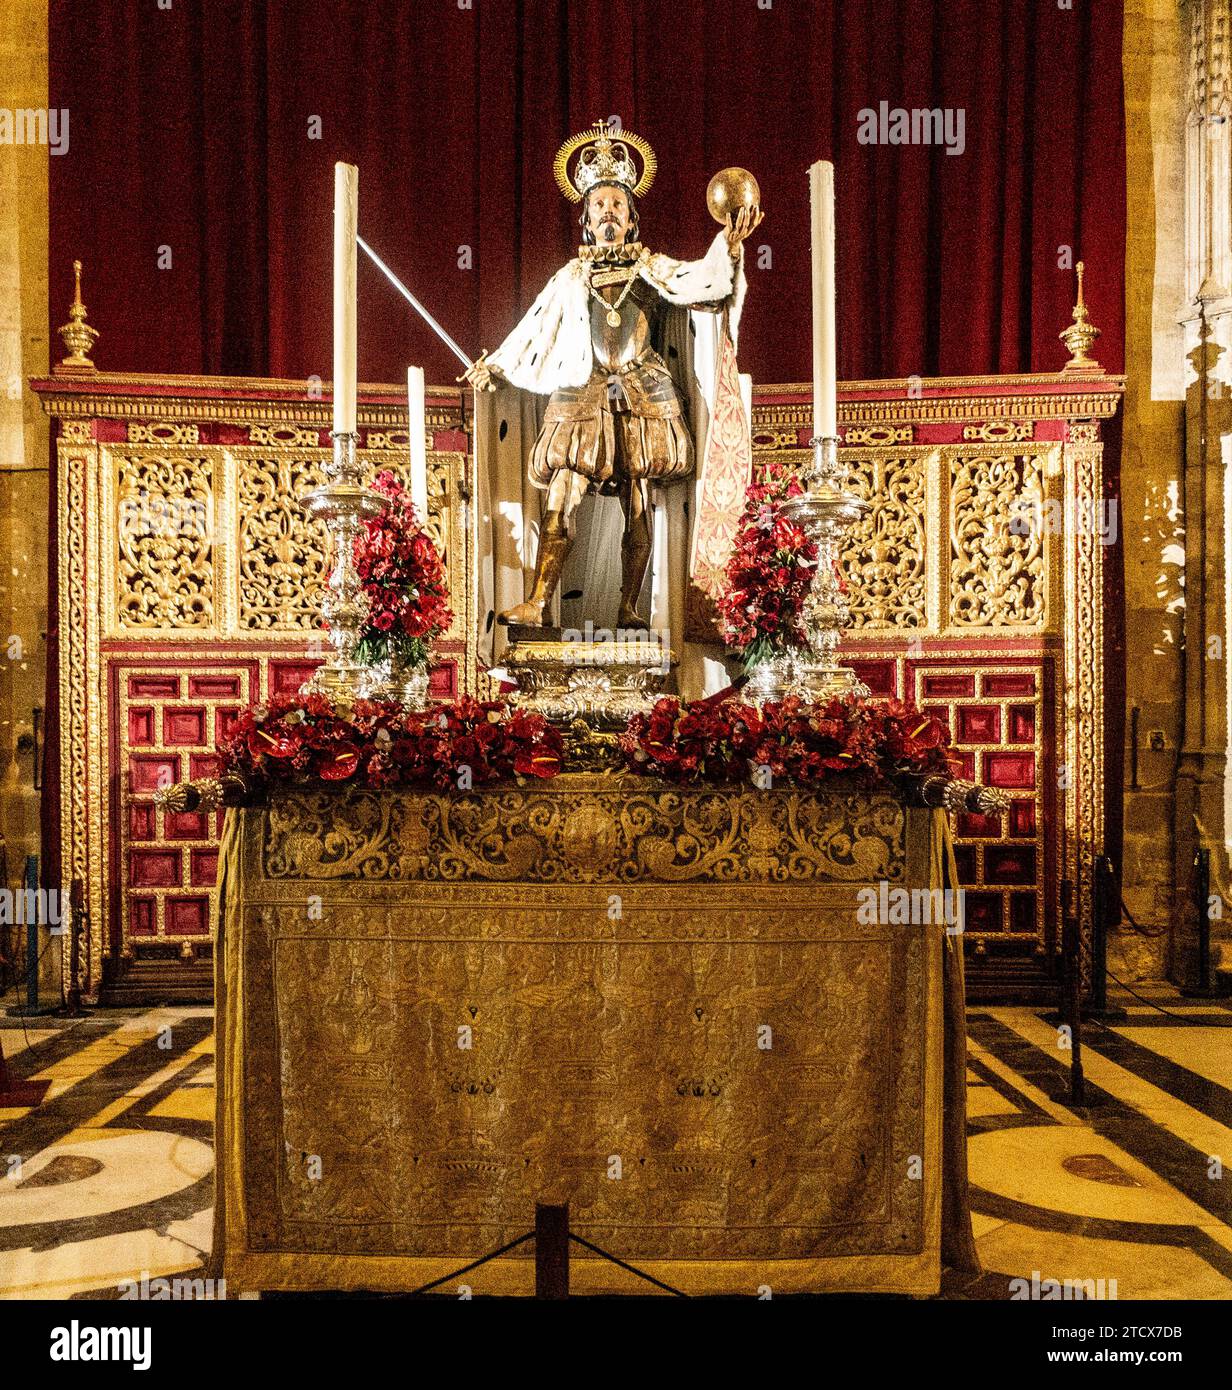 Statua del re Fernando 111 esposta nella cattedrale di Siviglia, in Spagna. Sito patrimonio dell'umanità dell'UNESCO. Foto Stock